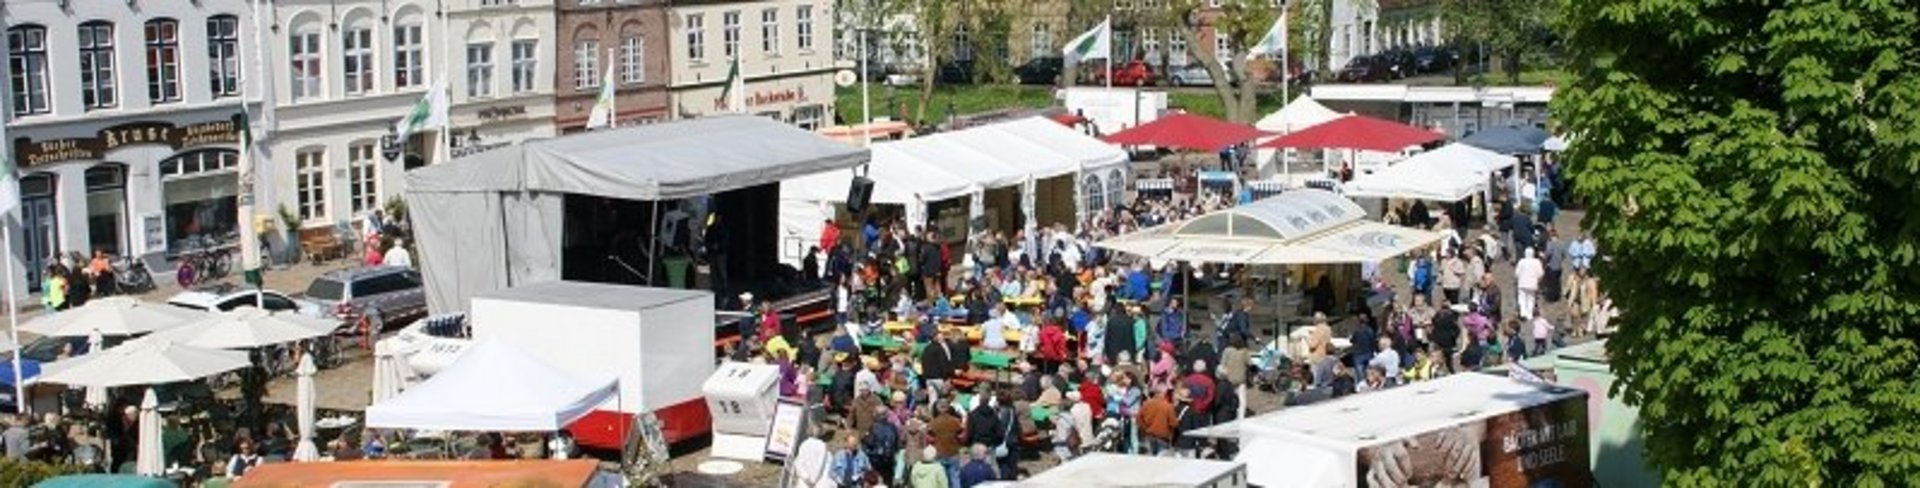 Regionaltag in Friedrichstadt